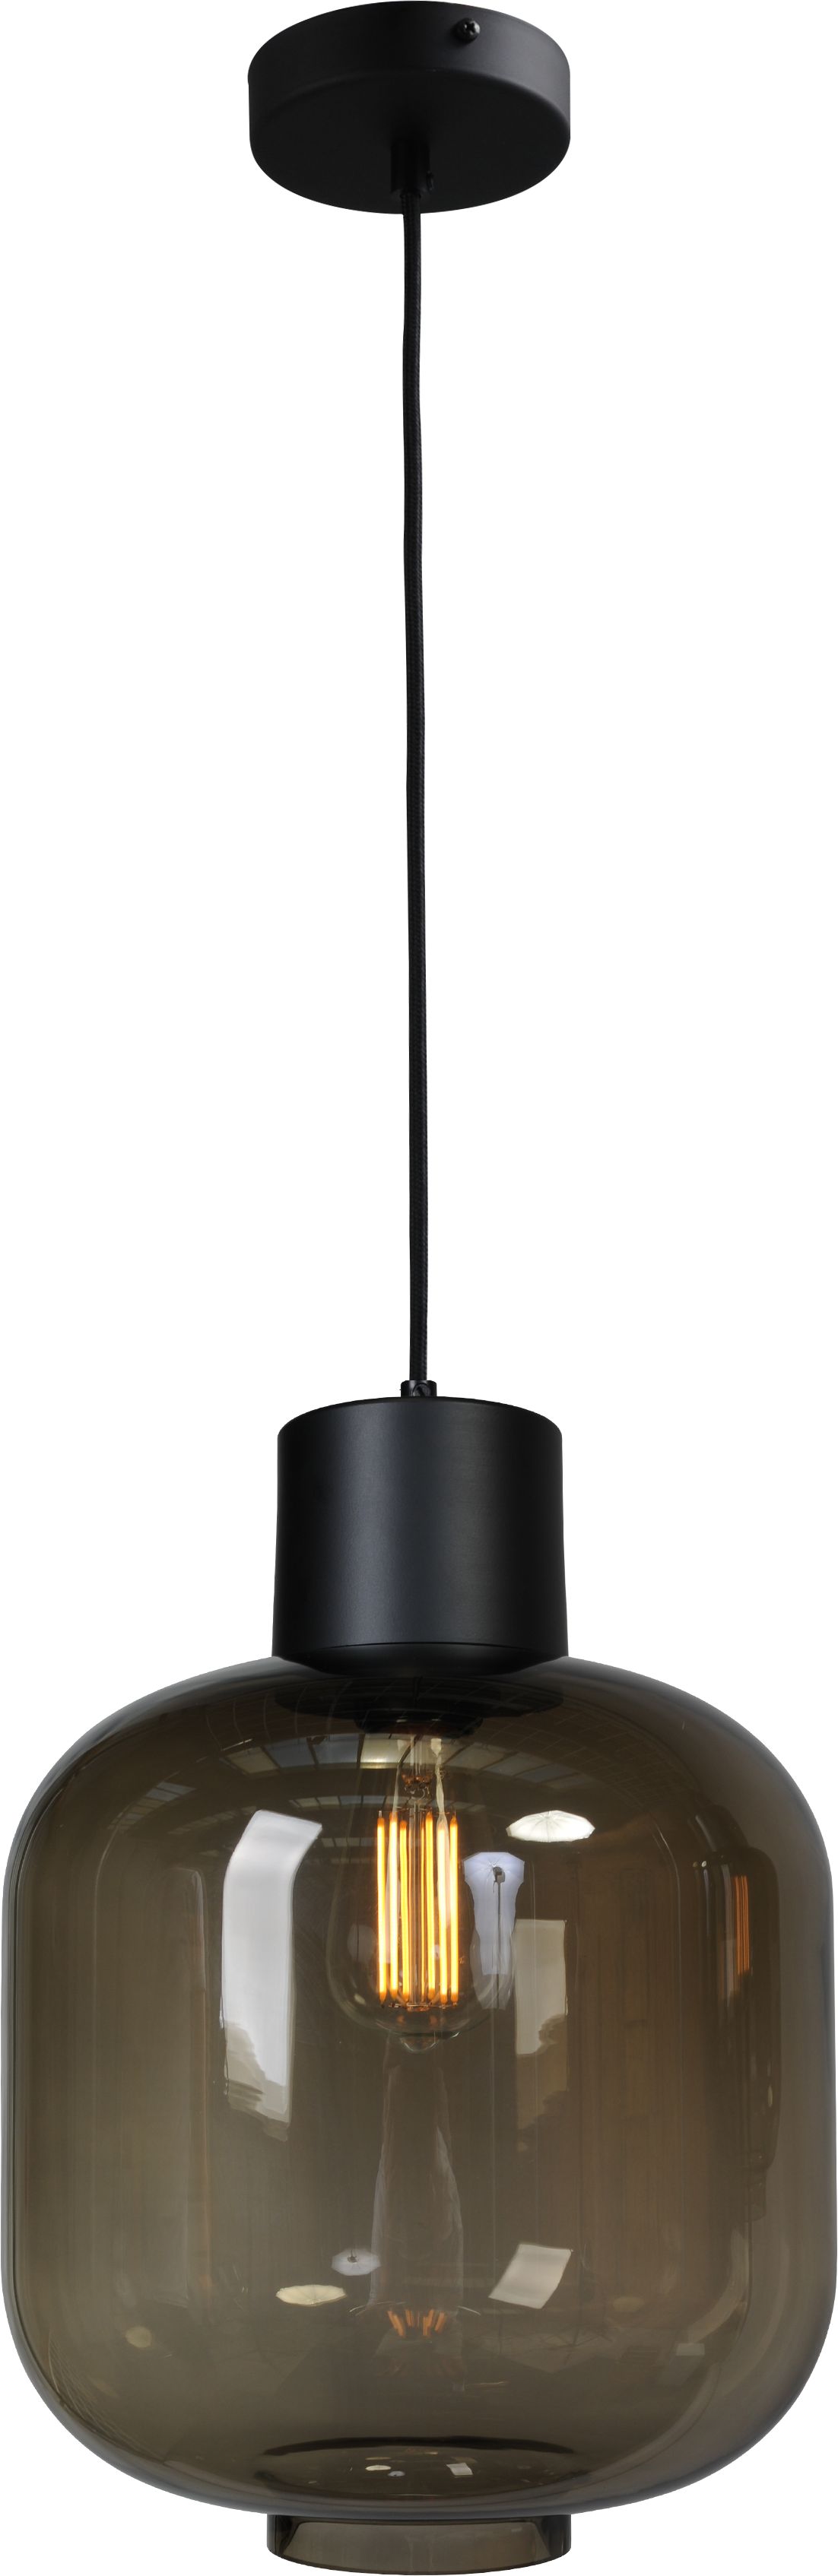 Stehlampe Schwarz 165 cm E27 Rauchglas Metall Leuchte